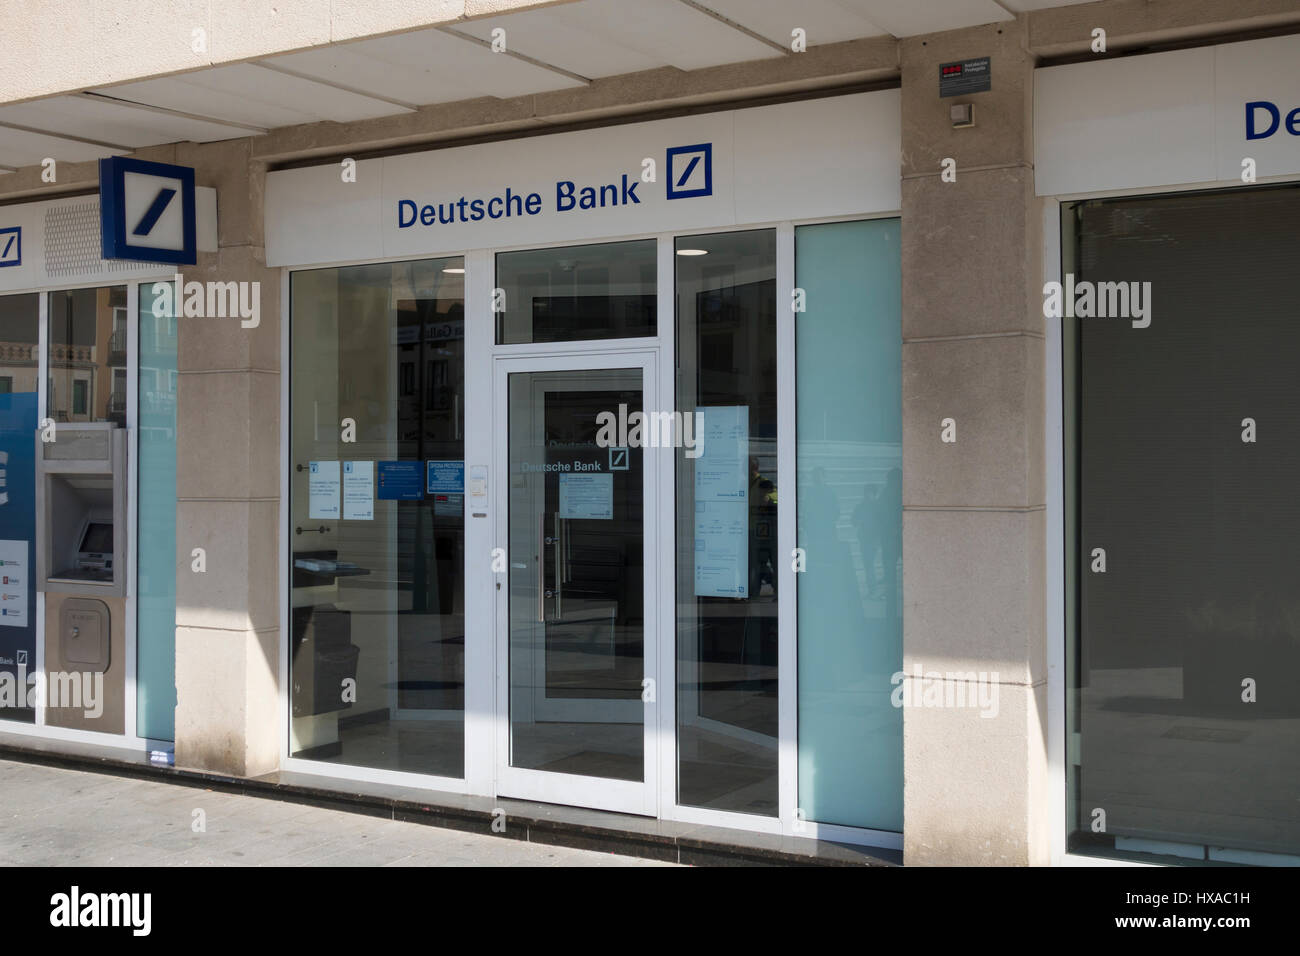 Deutsche Bank branch office all'aperto, con il testo in blu e il logo in un cartellone, nella città di Cambrils in Spagna Foto Stock